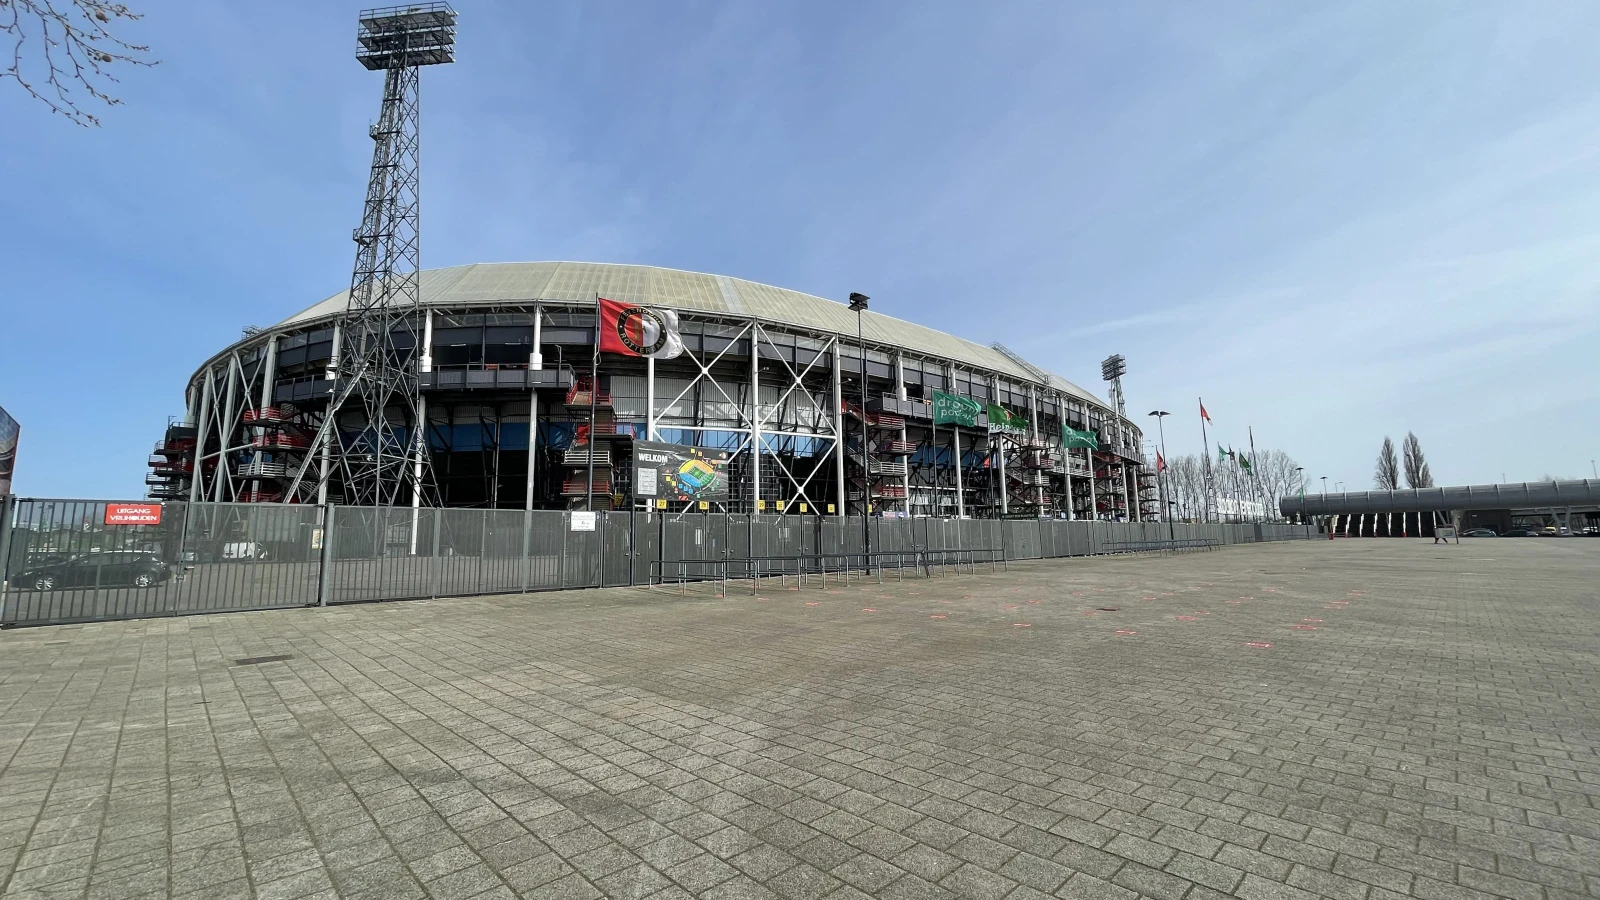 'Feyenoord in middencategorie op de FRS-ranglijst van de KNVB'